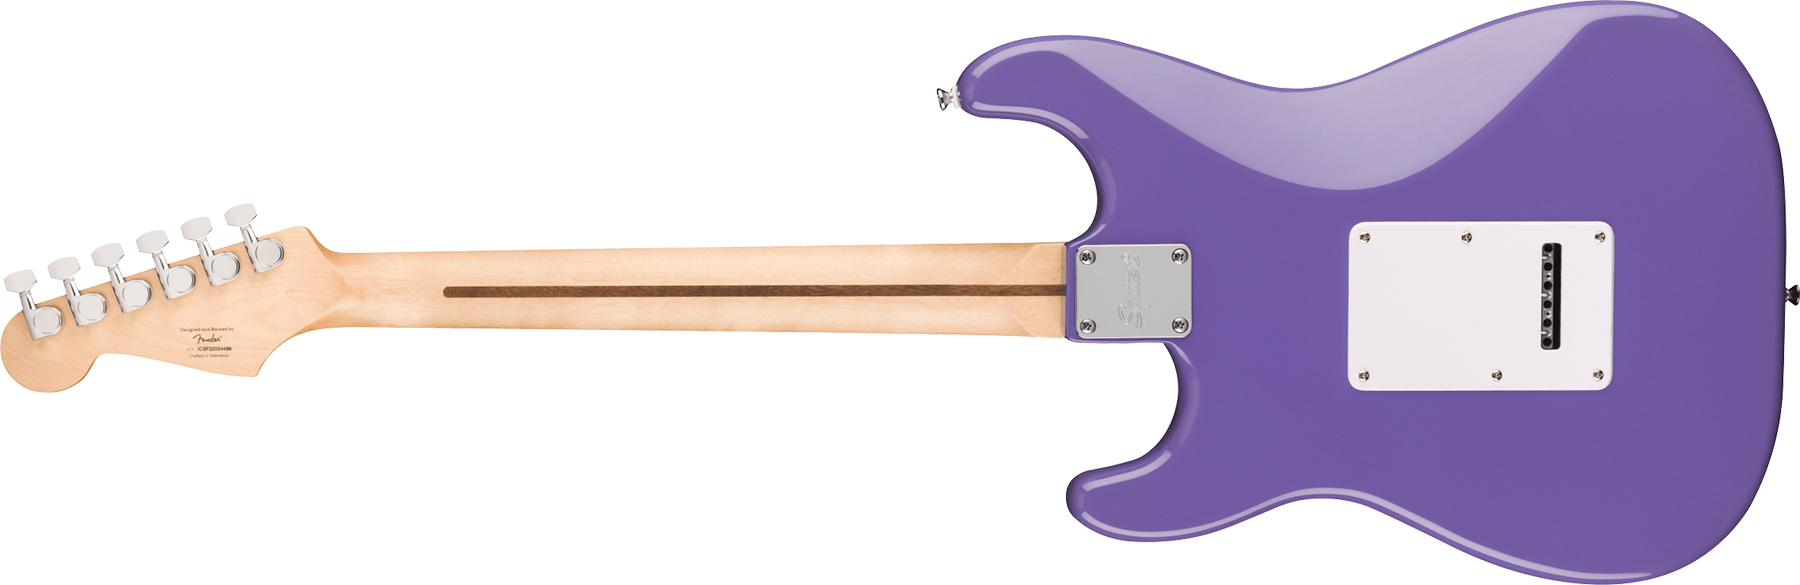 Squier Strat Sonic 3s Trem Lau - Ultraviolet - Guitarra eléctrica con forma de str. - Variation 1